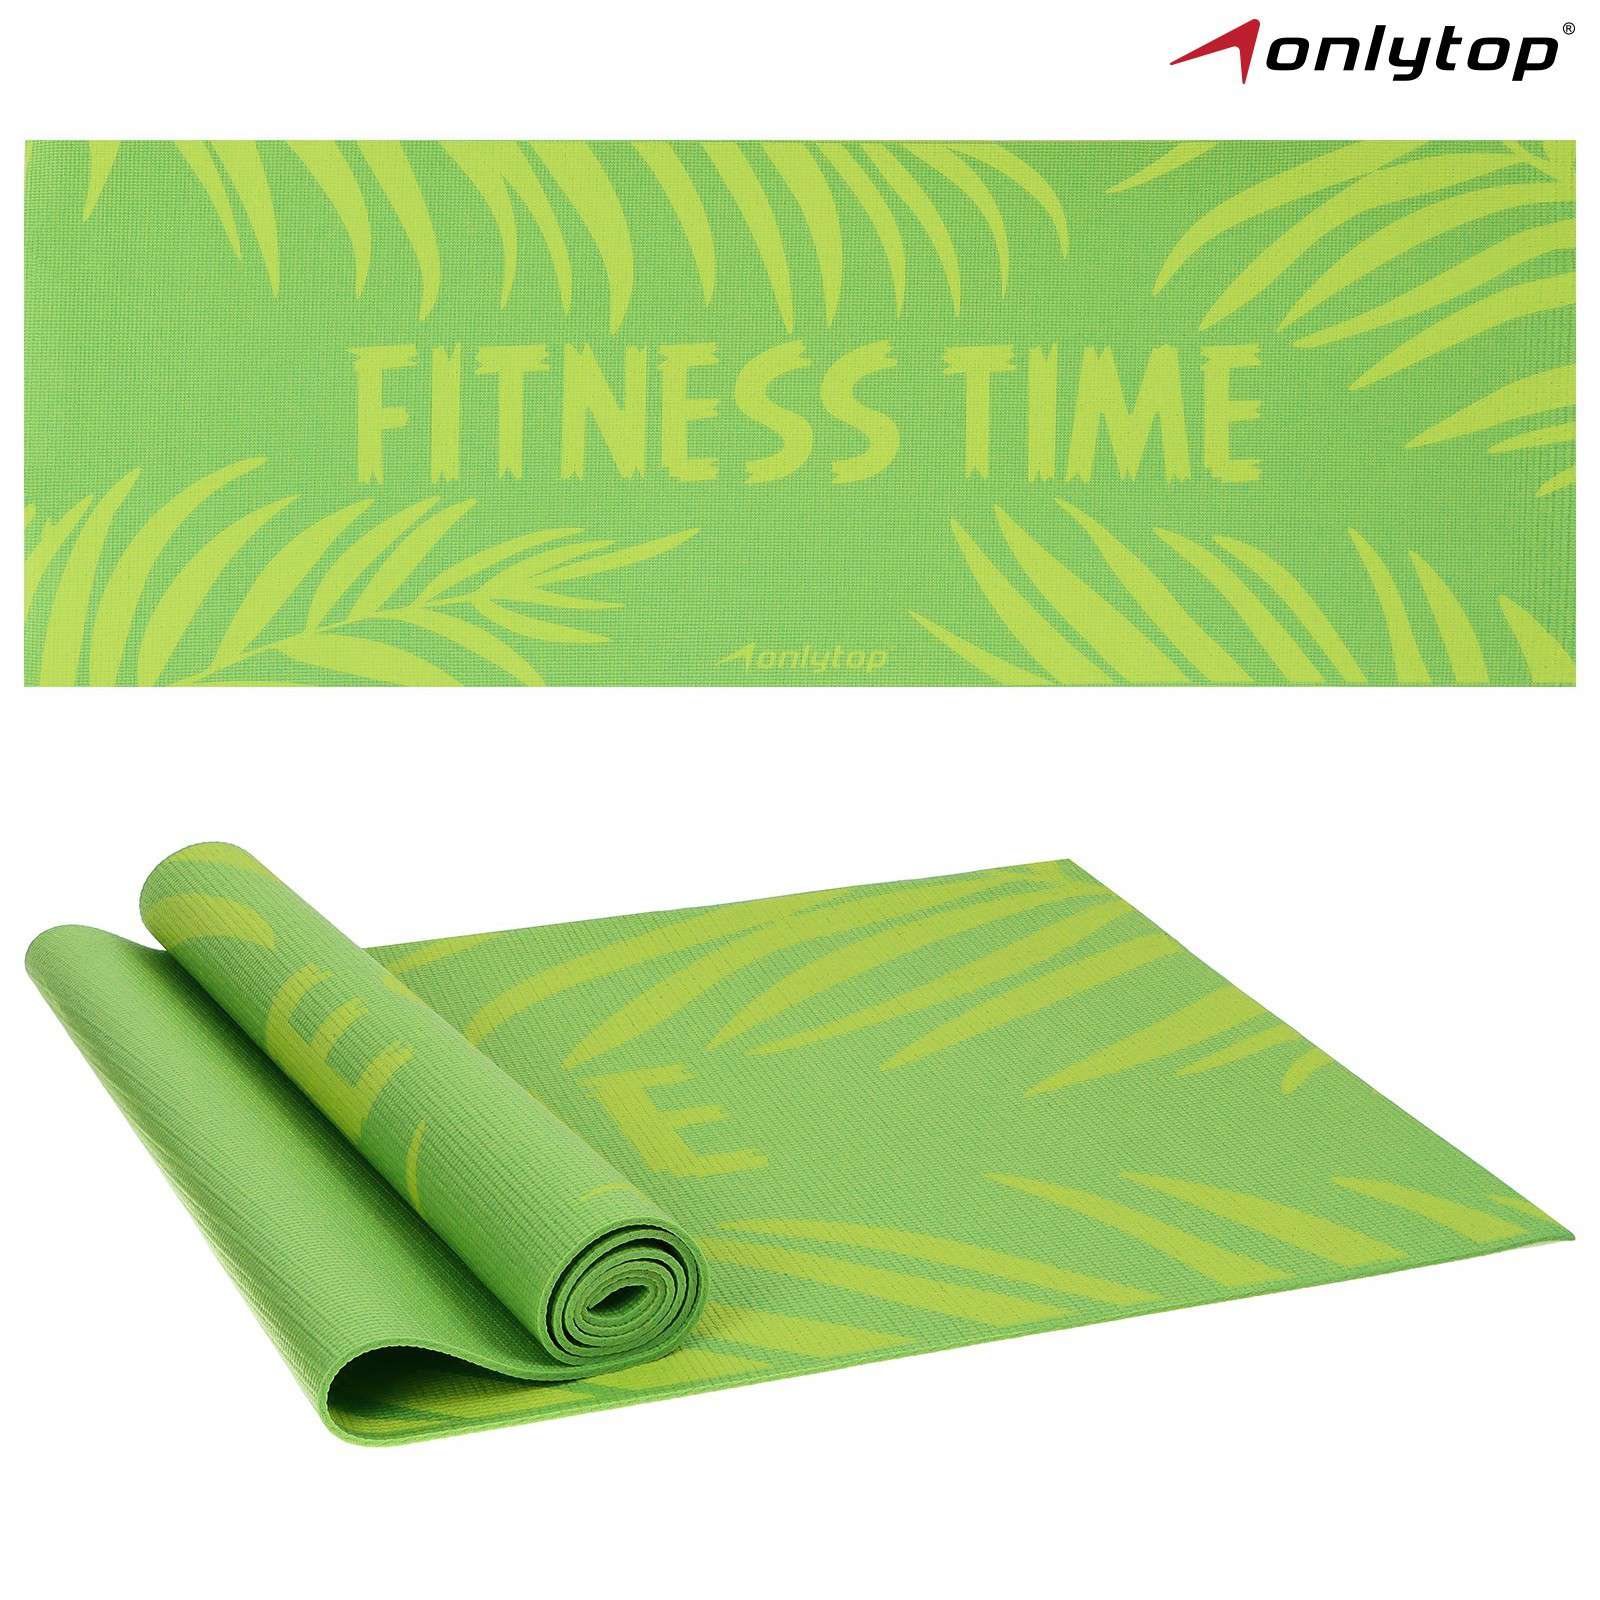 Коврик для фитнеса 7387391 Fitness time 173*61*0,4см цвет зелёный - Магнитогорск 